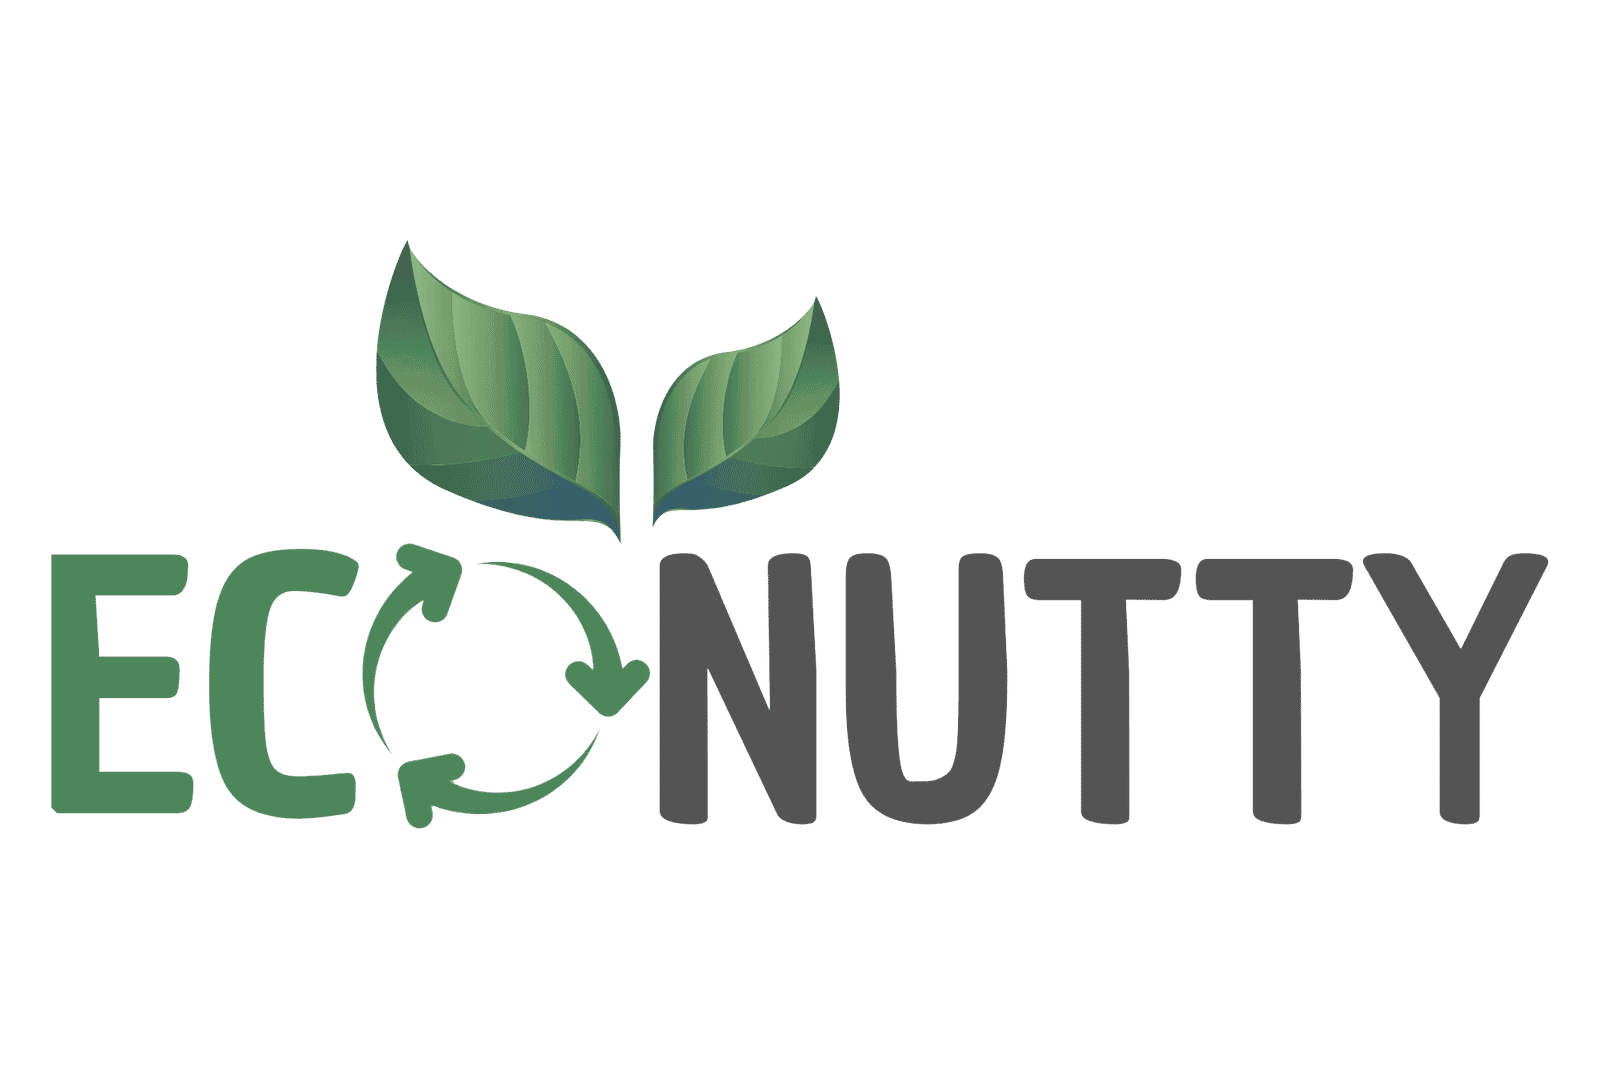 Eco Nutty (1)